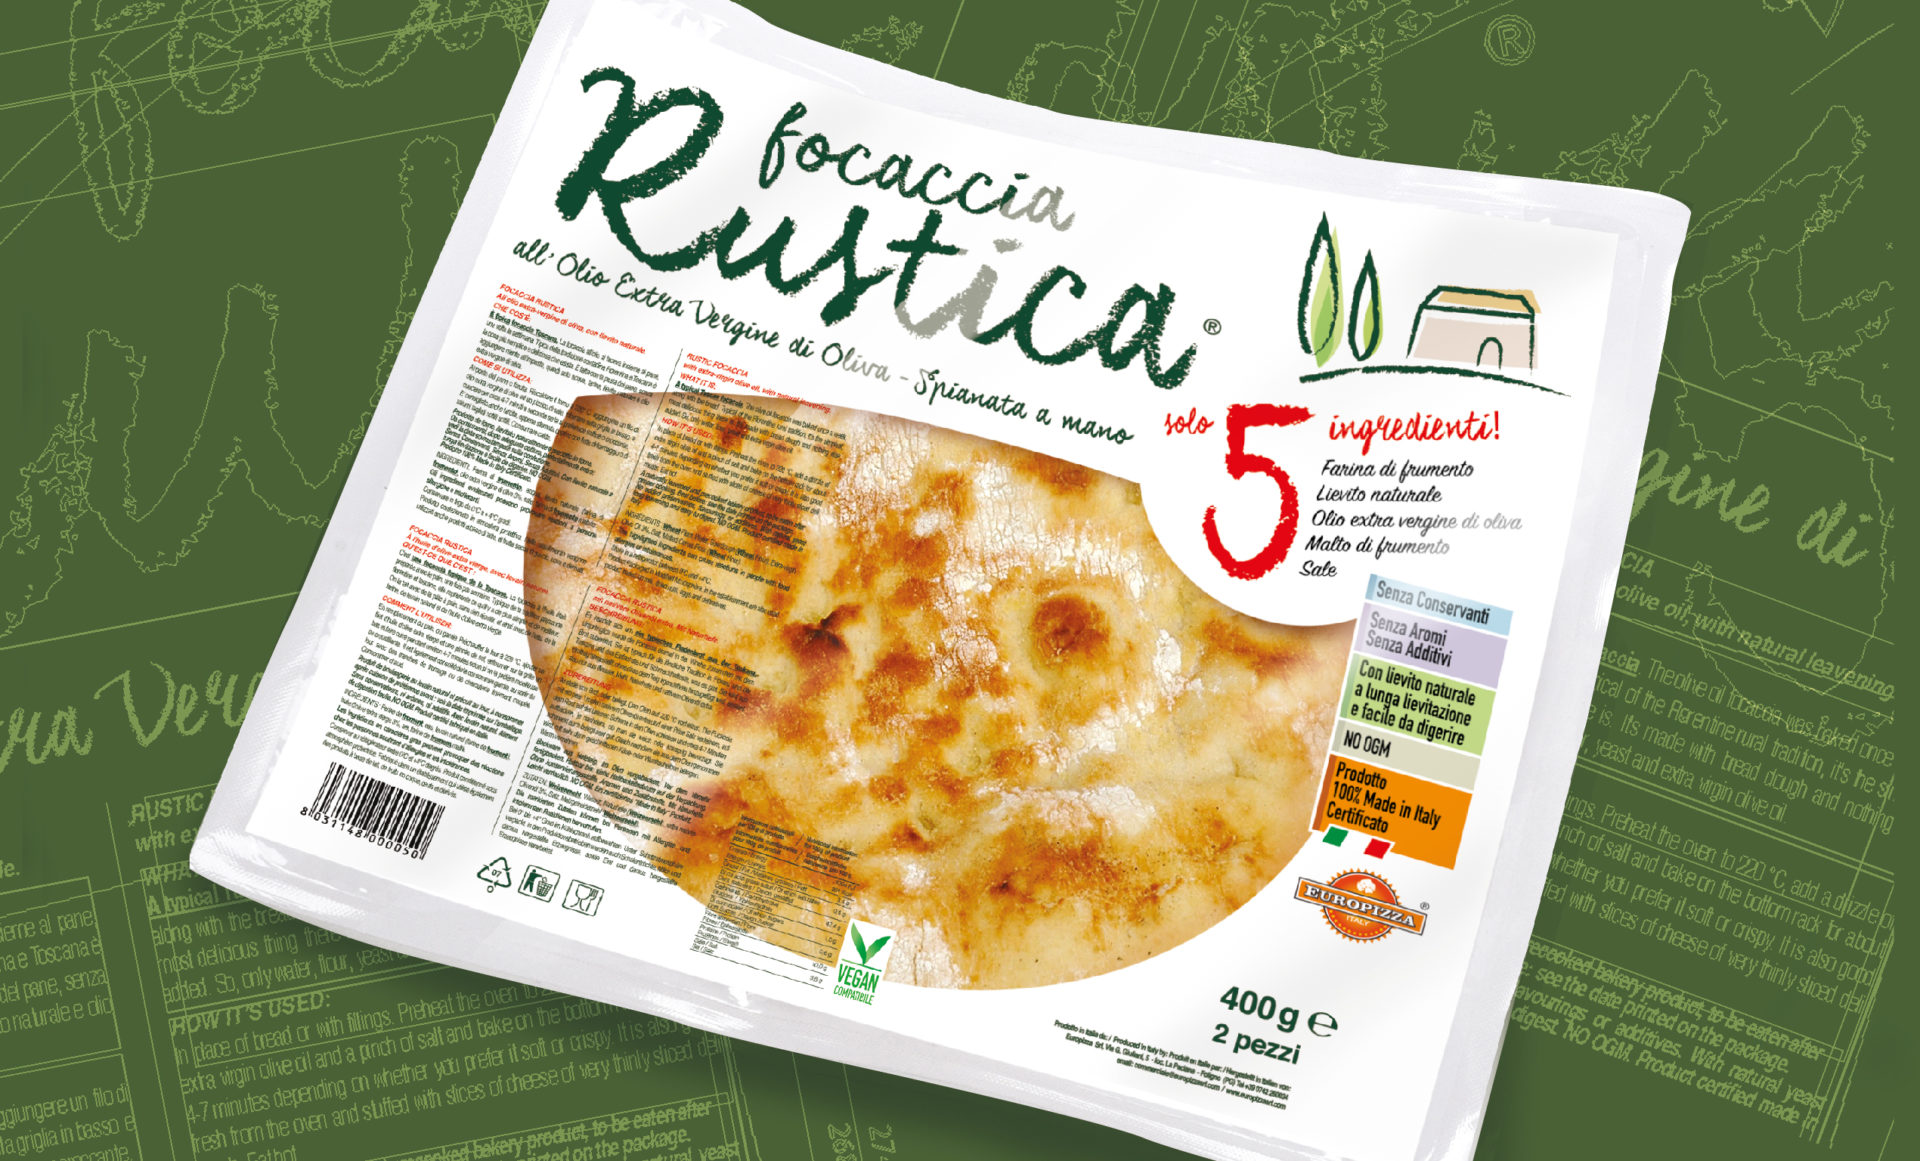 Progettazione Packaging Focaccia Rustica Europizza Foligno Studiovagnetti Perugia